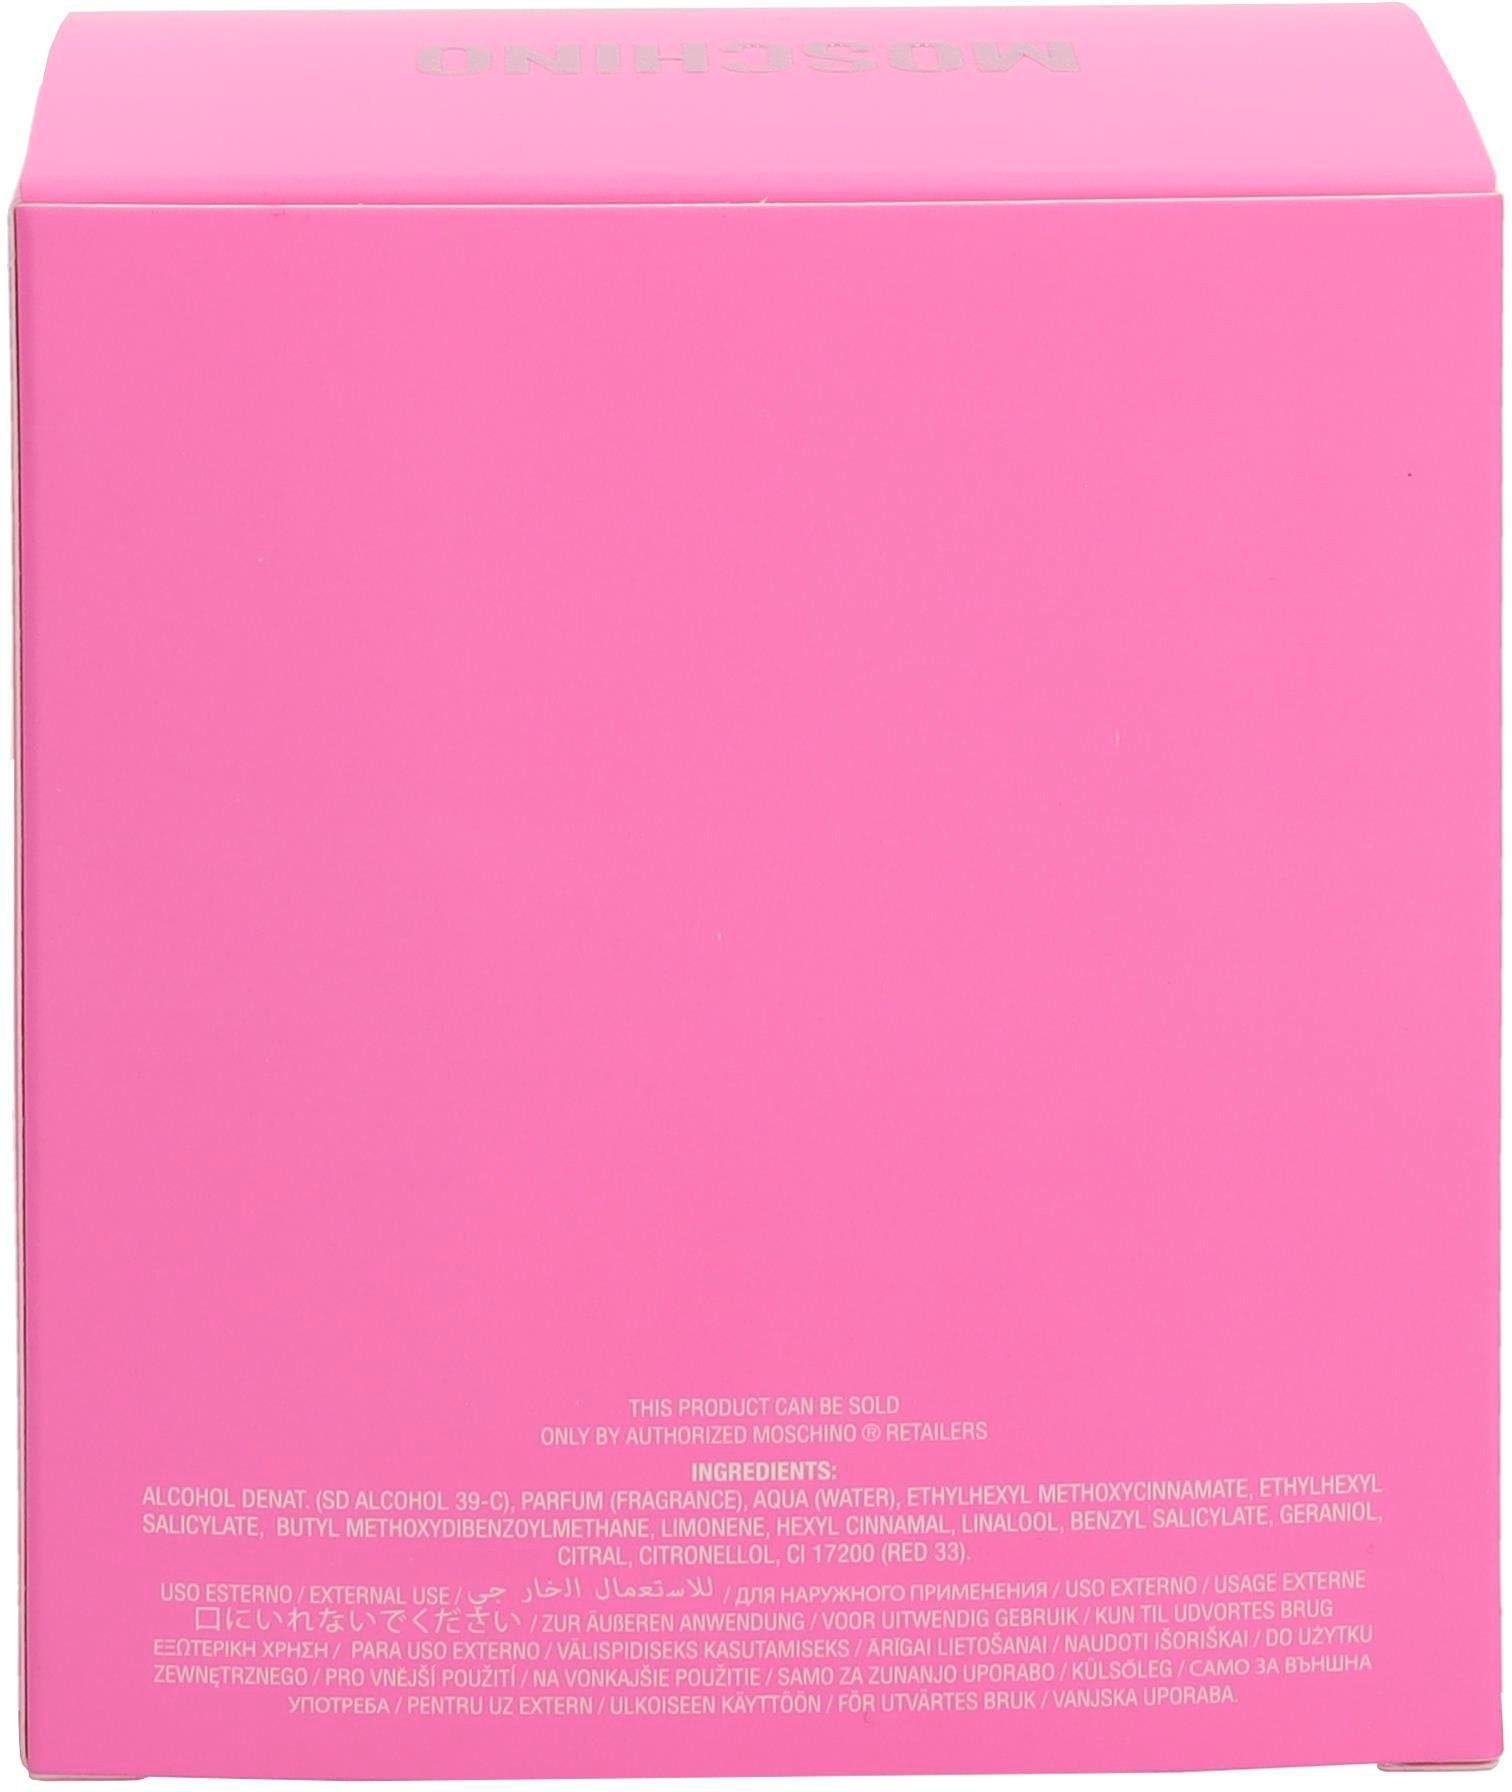 Pink Moschino Eau Toilette Bouquet de